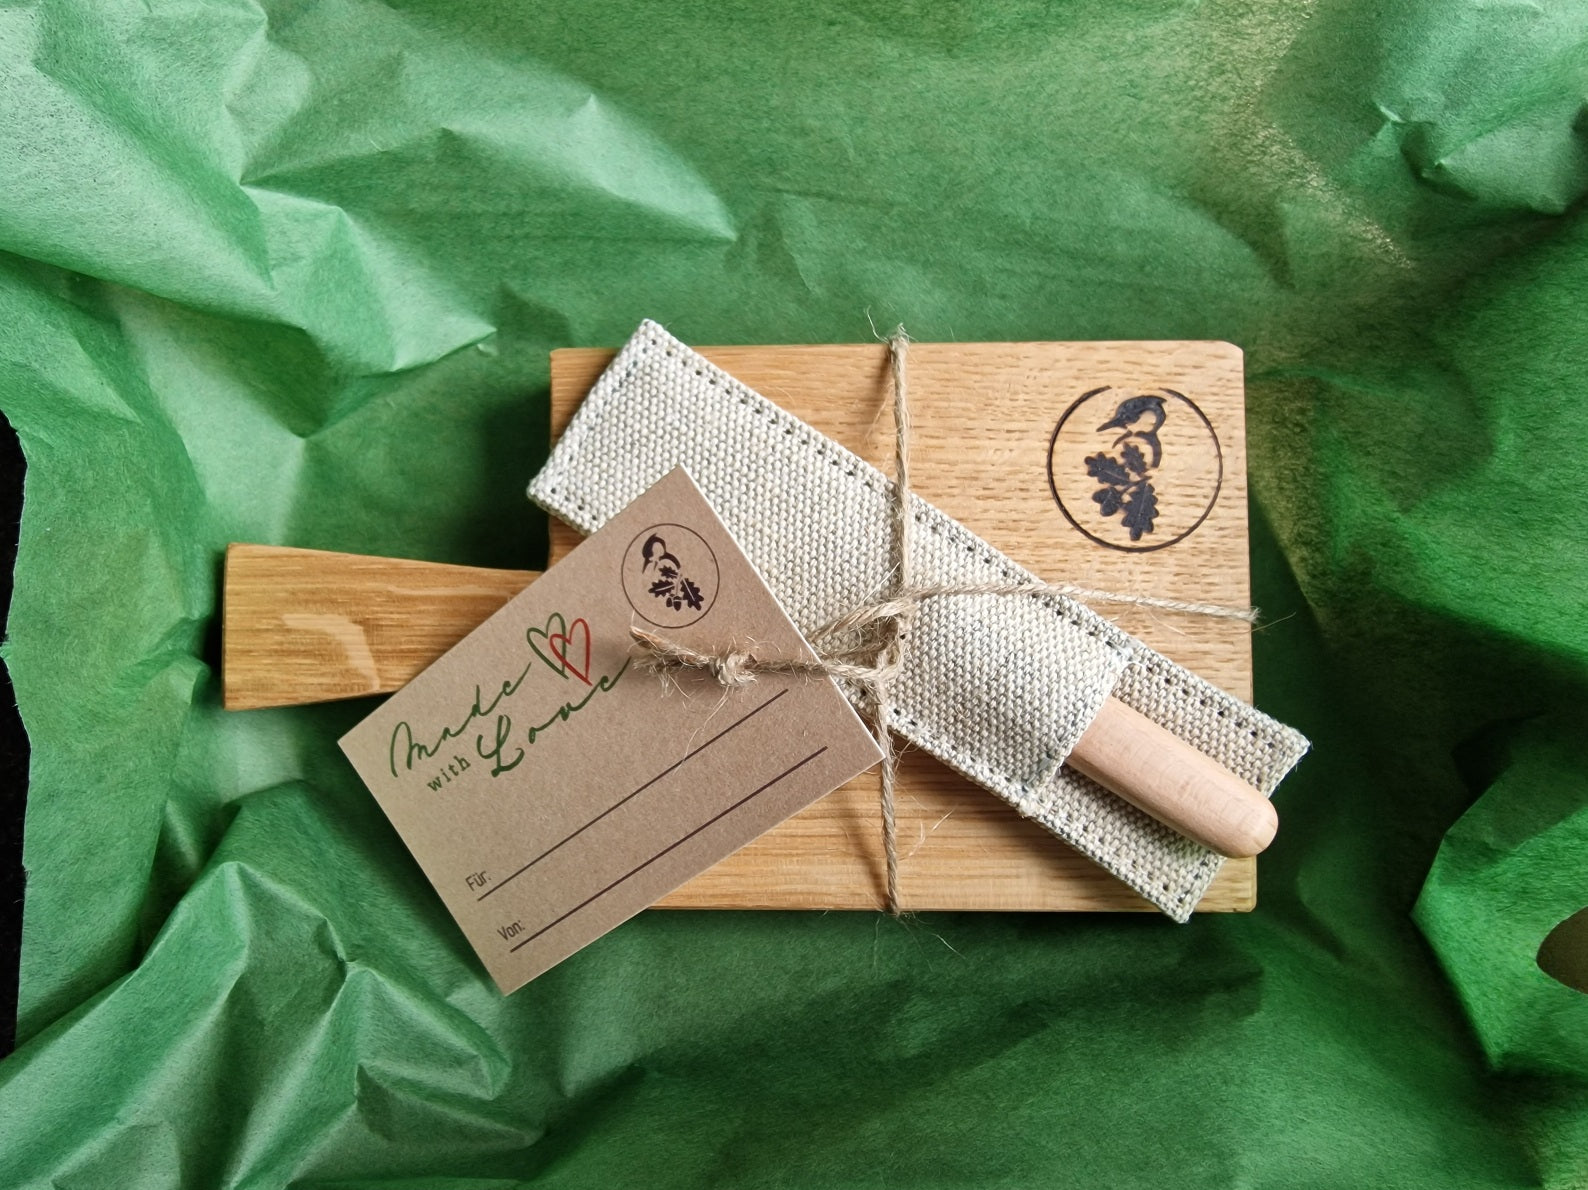 Amuse Gueule Brettchen mit Stiel und einem Buttermesser von Windmühlenmesser in einem grünen Seidenpapier gehüllt.